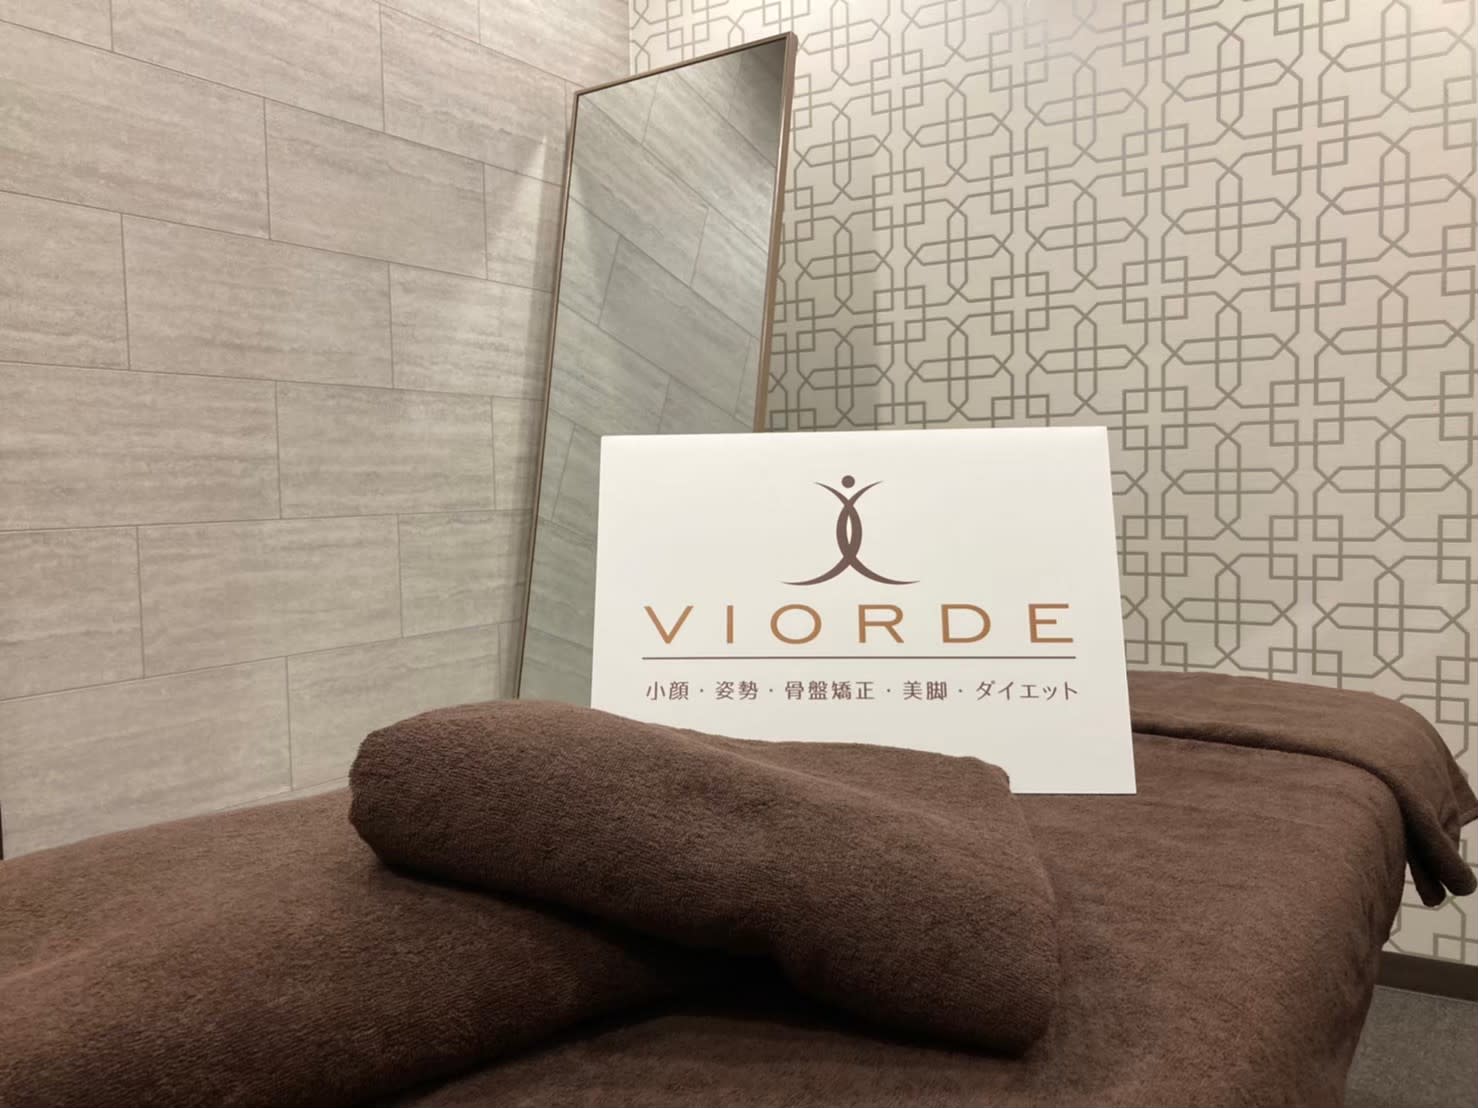 ヴィオーデ美容整体サロン 新宿店のアイキャッチ画像